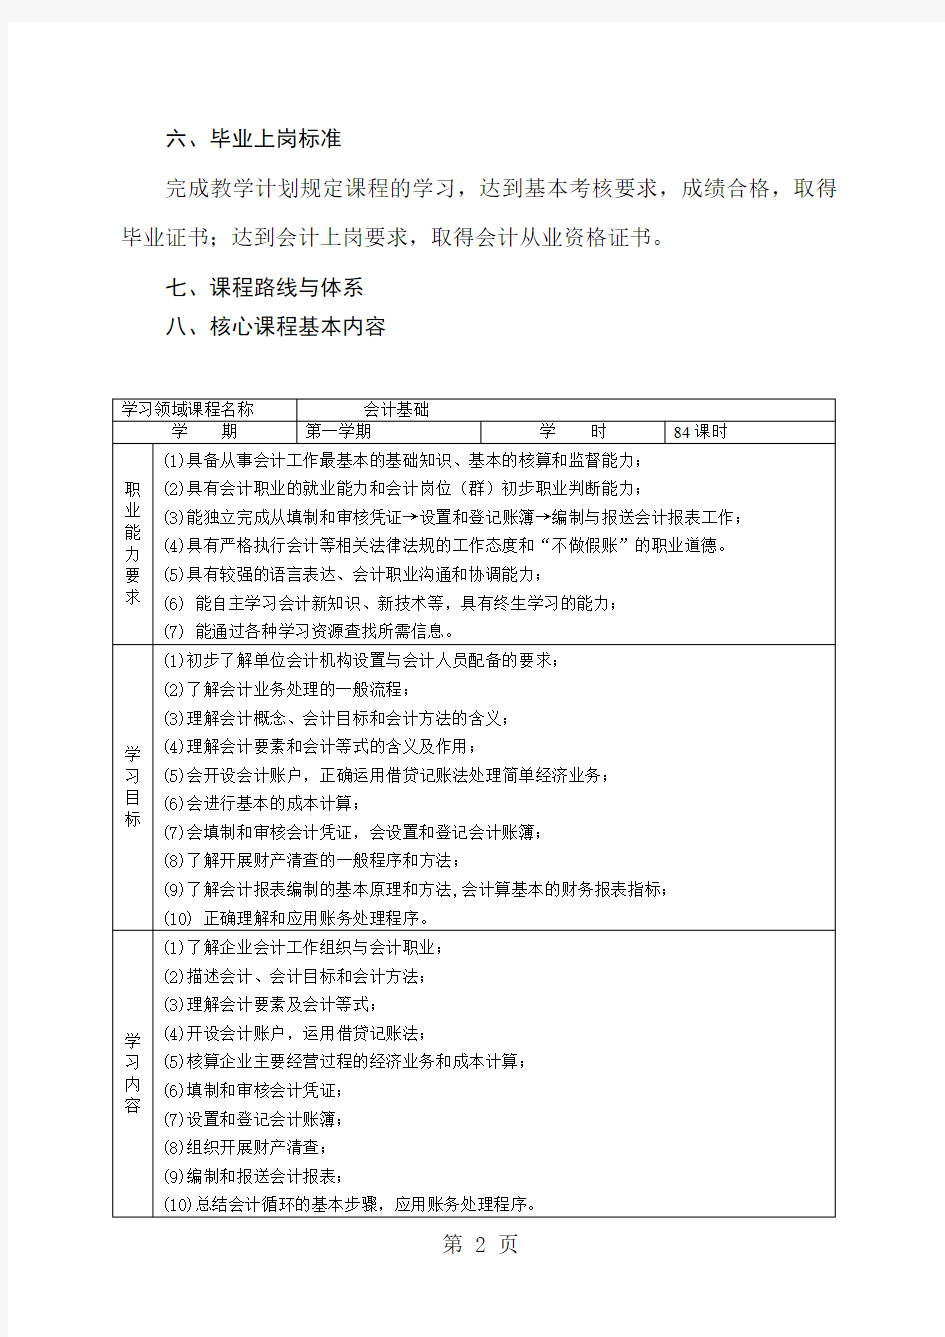 中职会计专业课程标准-12页word资料